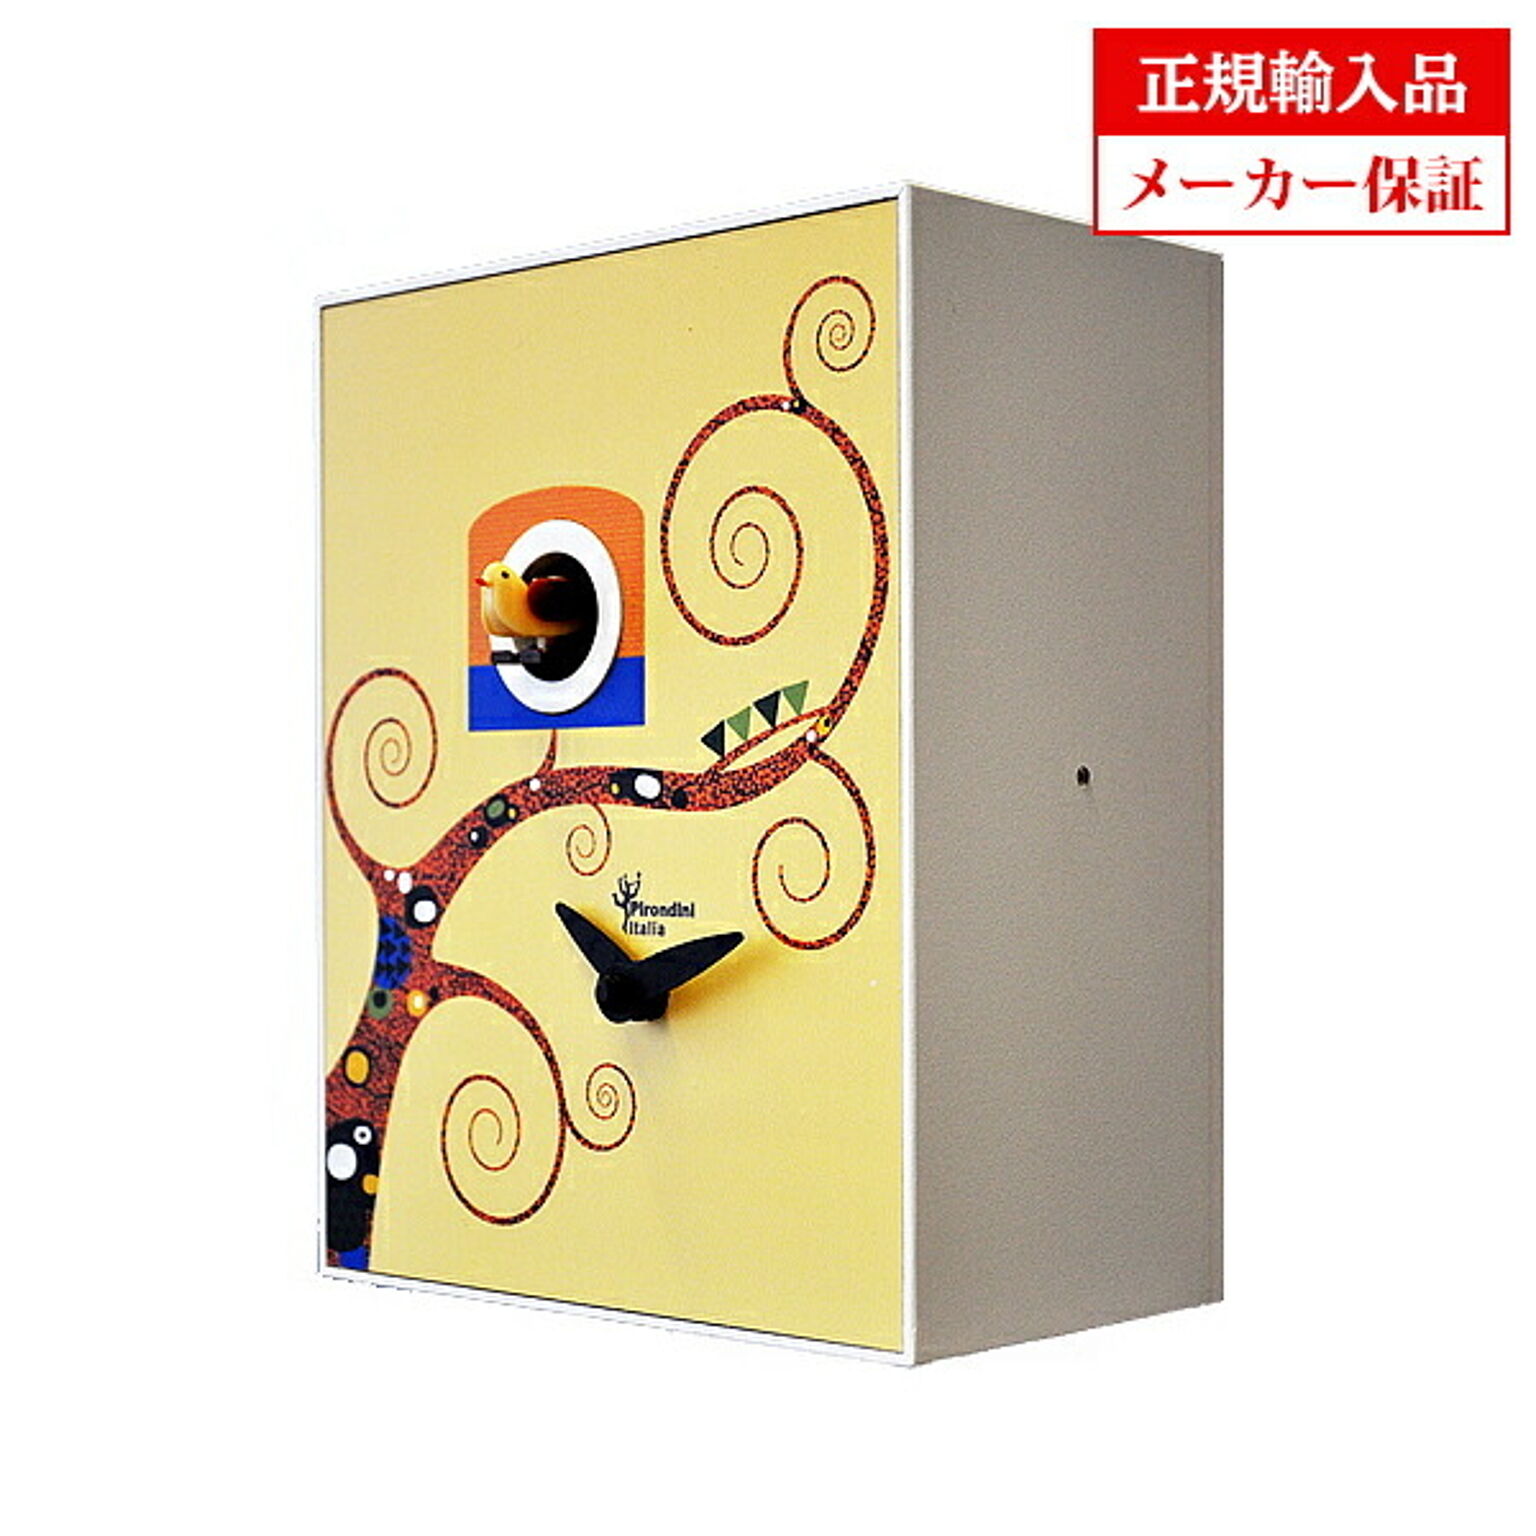 【正規輸入品】イタリア ピロンディーニ Pirondini D' Apres 900&13 ART900-13D 木製 クオーツ 鳩時計（はと時計） Apres Gustav Klimt クリムト